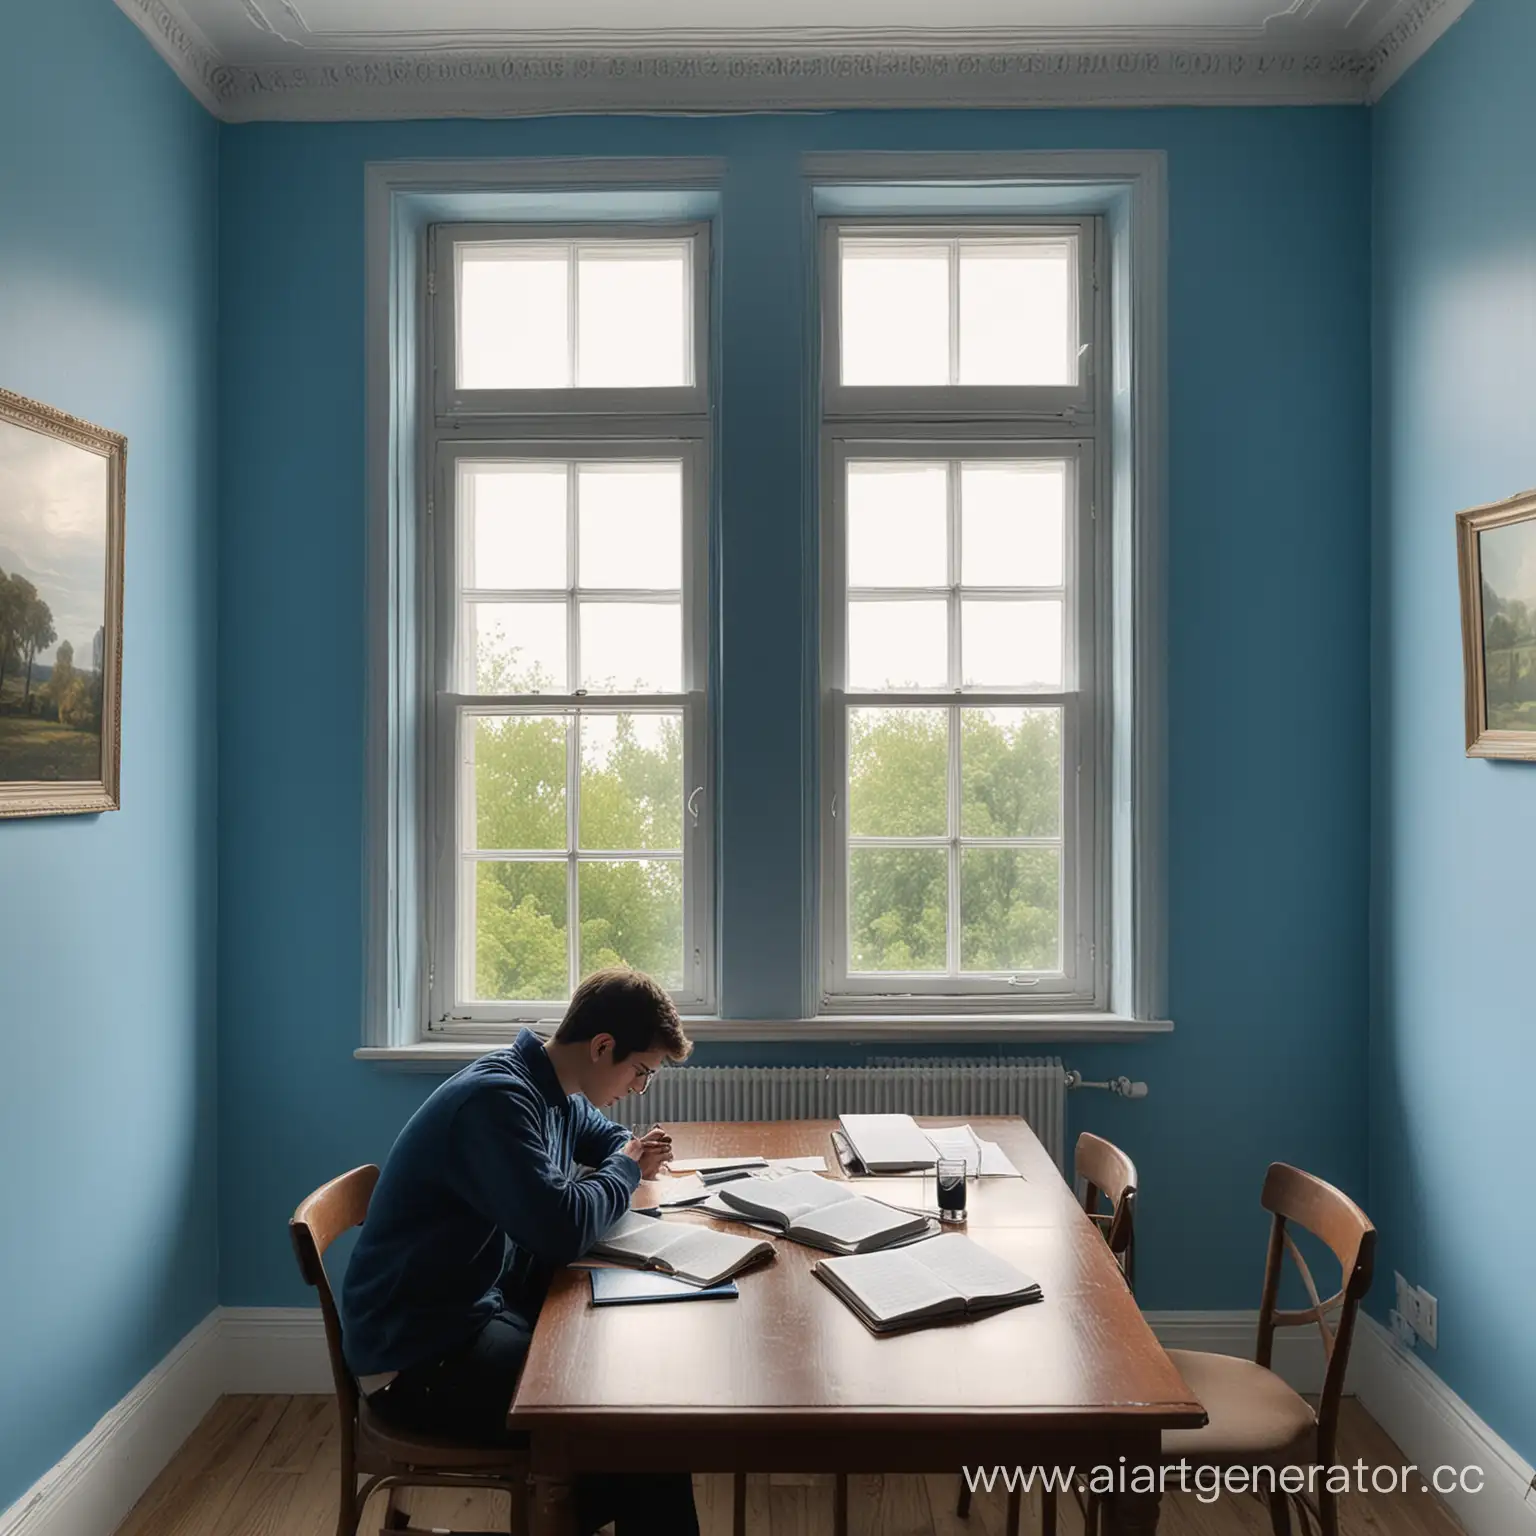 ученик учится в синей комнате и сидит за столом, рядом открыто окно, за окном день